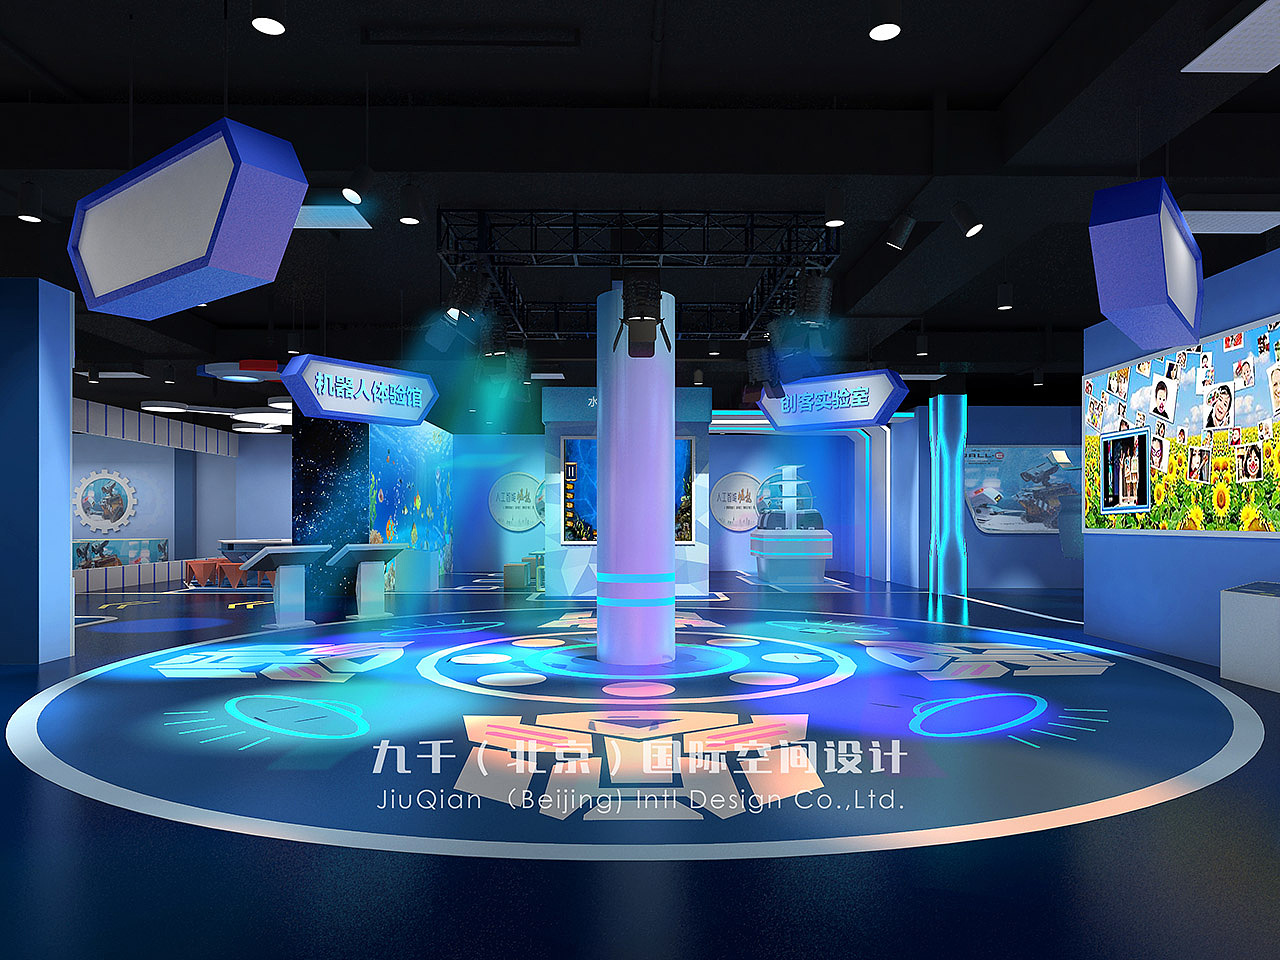 中国科学技术馆“儿童科学乐园”展厅更新改造后全新亮相